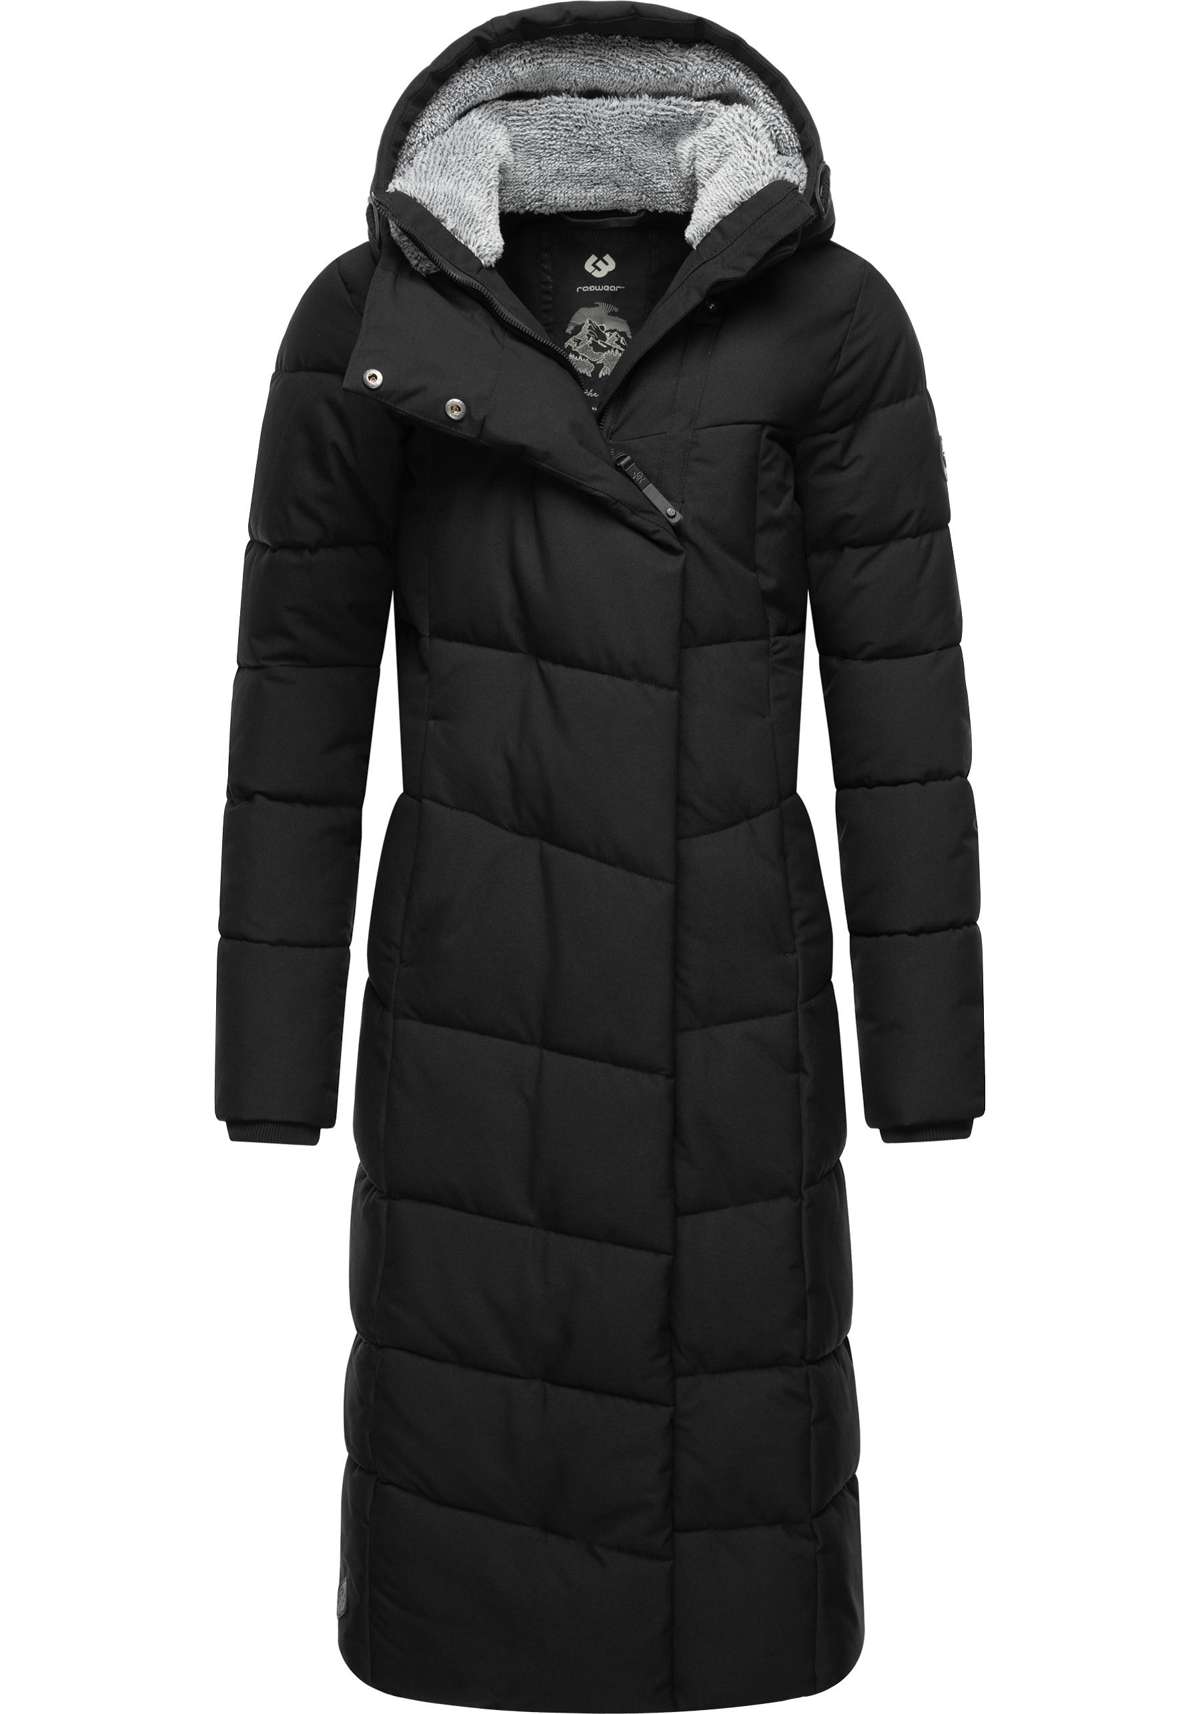 Стеганое пальто, вневременное, водонепроницаемое женское зимнее пальто.